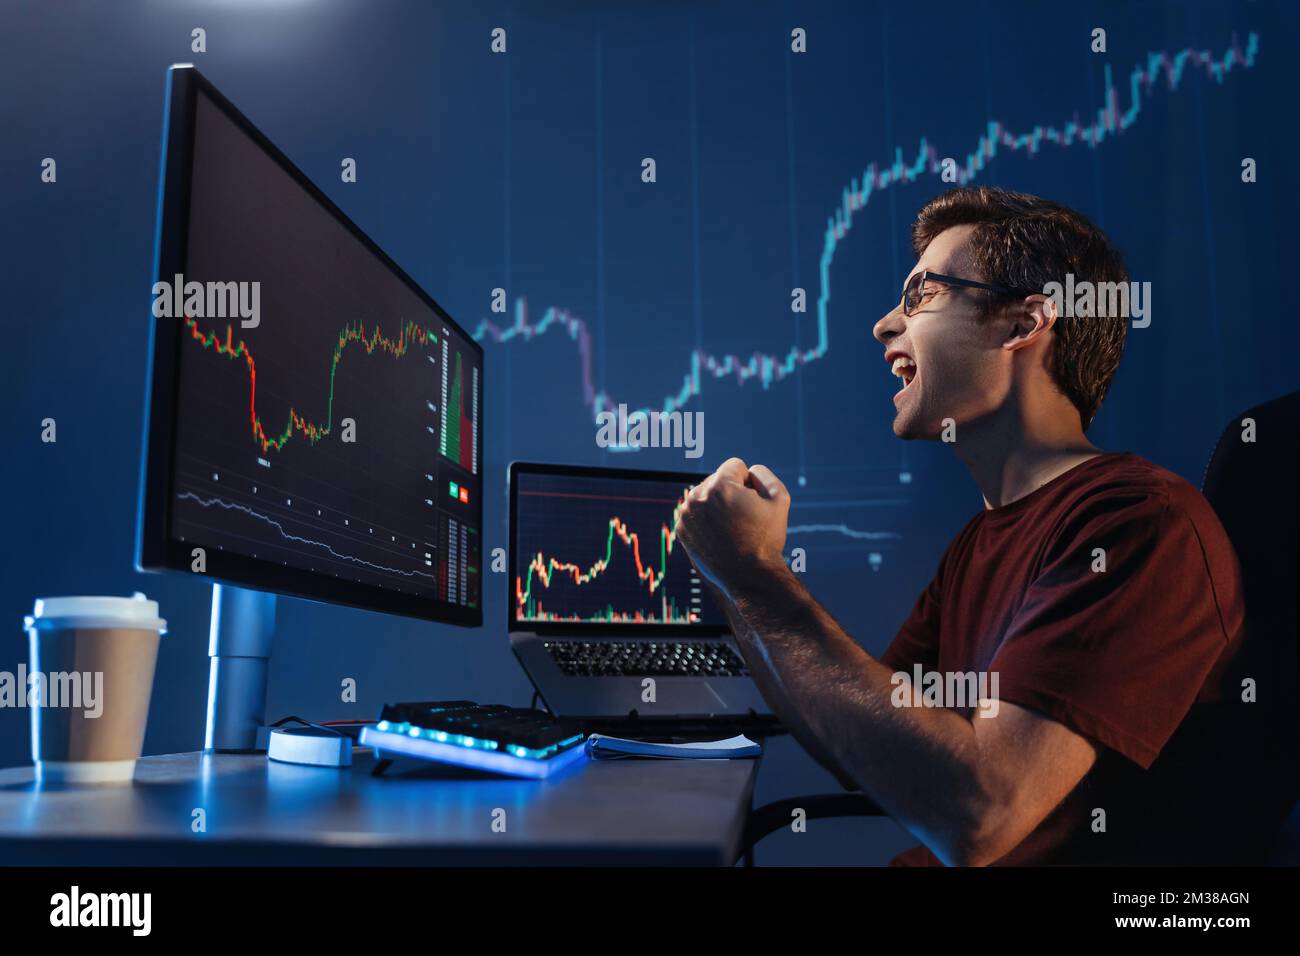 Vue de côté de crypto Trader mâle faisant oui geste criant avec triomphe. Homme sorti regardant l'écran avec le tableau numérique de chandelier de la bourse de crypto-monnaie et du marché d'investissement Banque D'Images